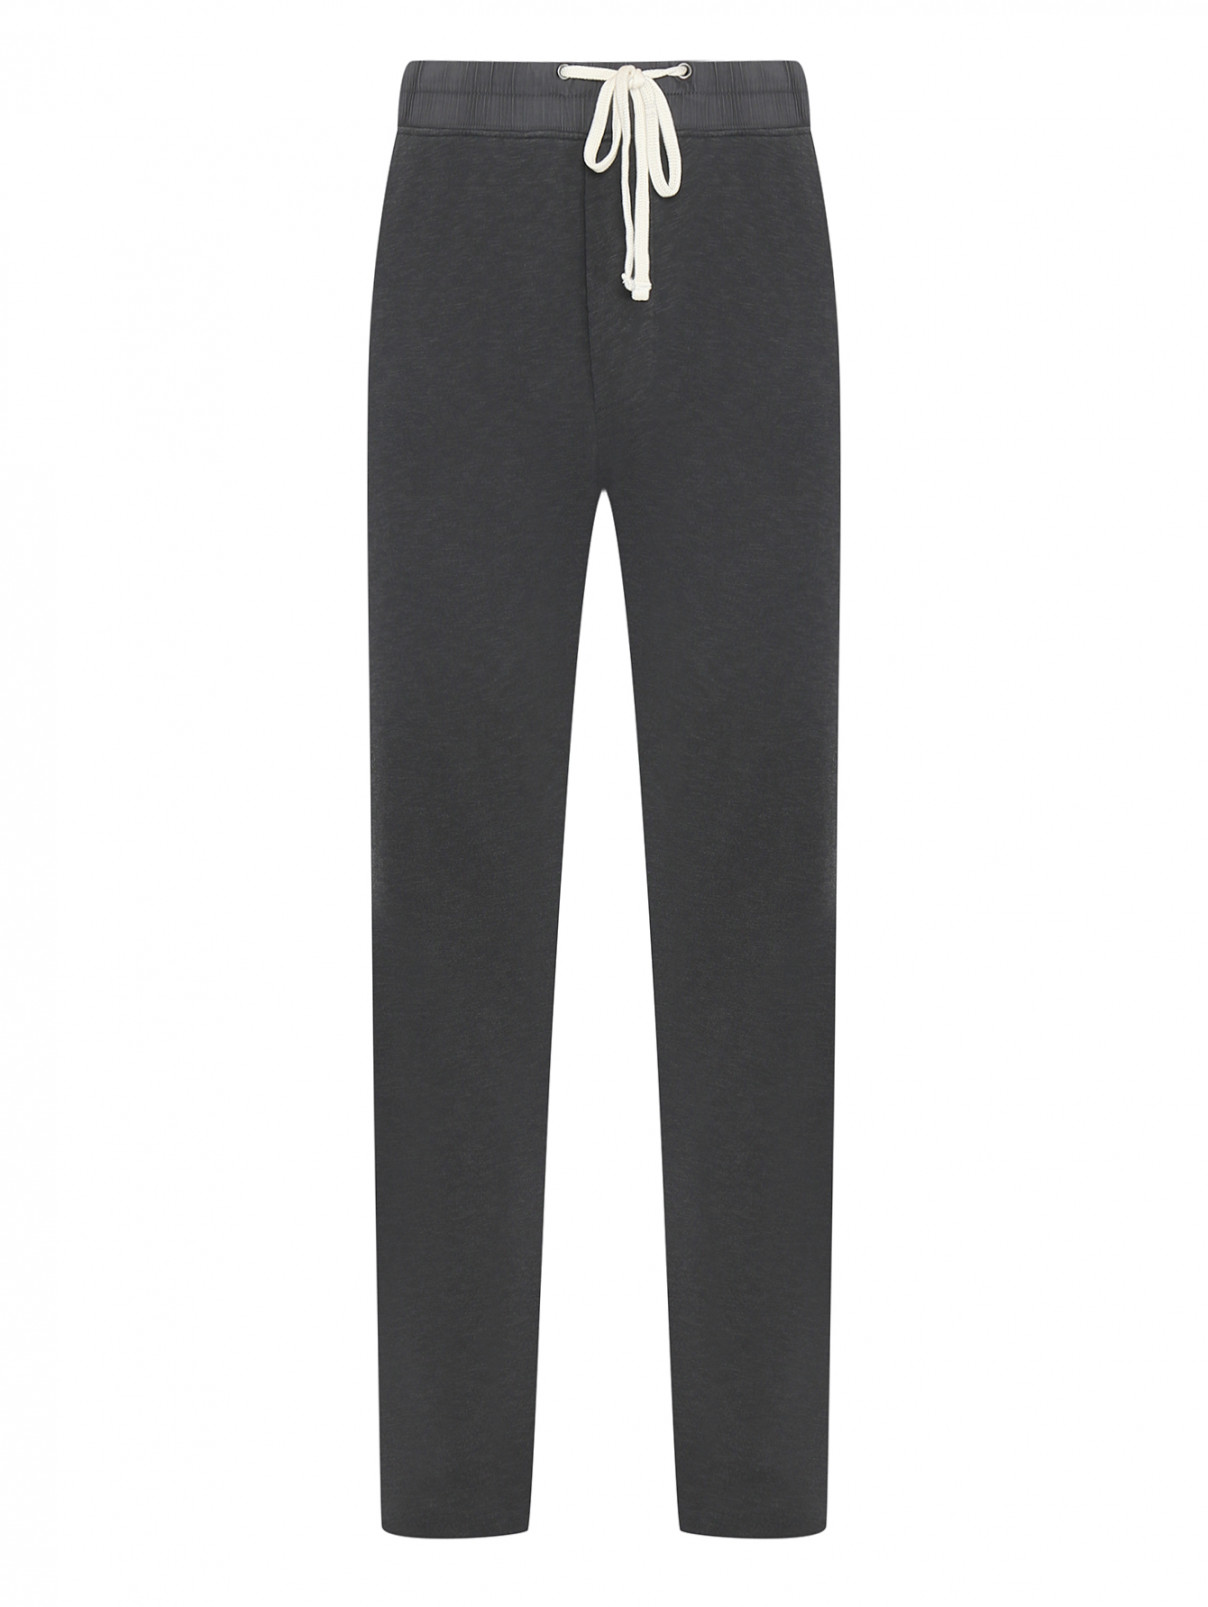 Трикотажные брюки из хлопка James Perse  –  Общий вид  – Цвет:  Серый